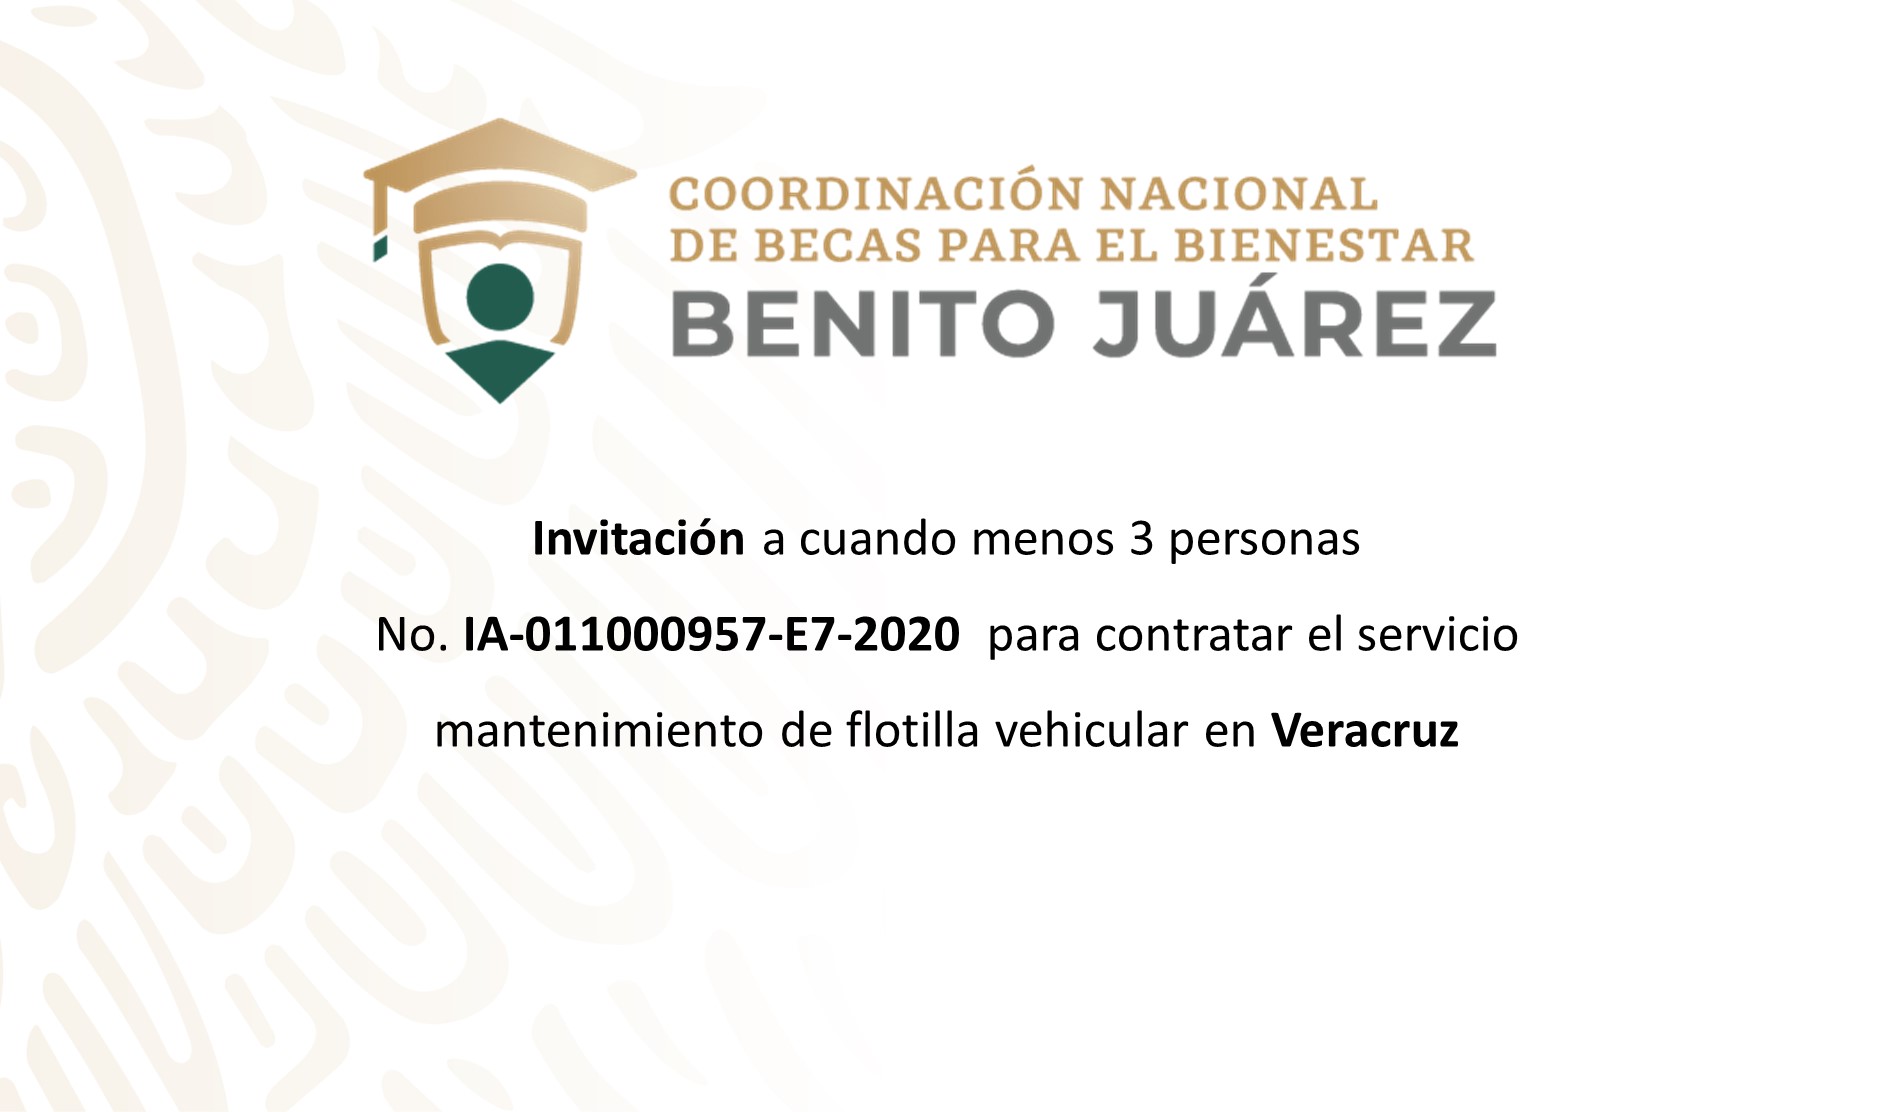 Invitación para contratar el servicio de mantenimiento de flotilla vehicular en Veracruz